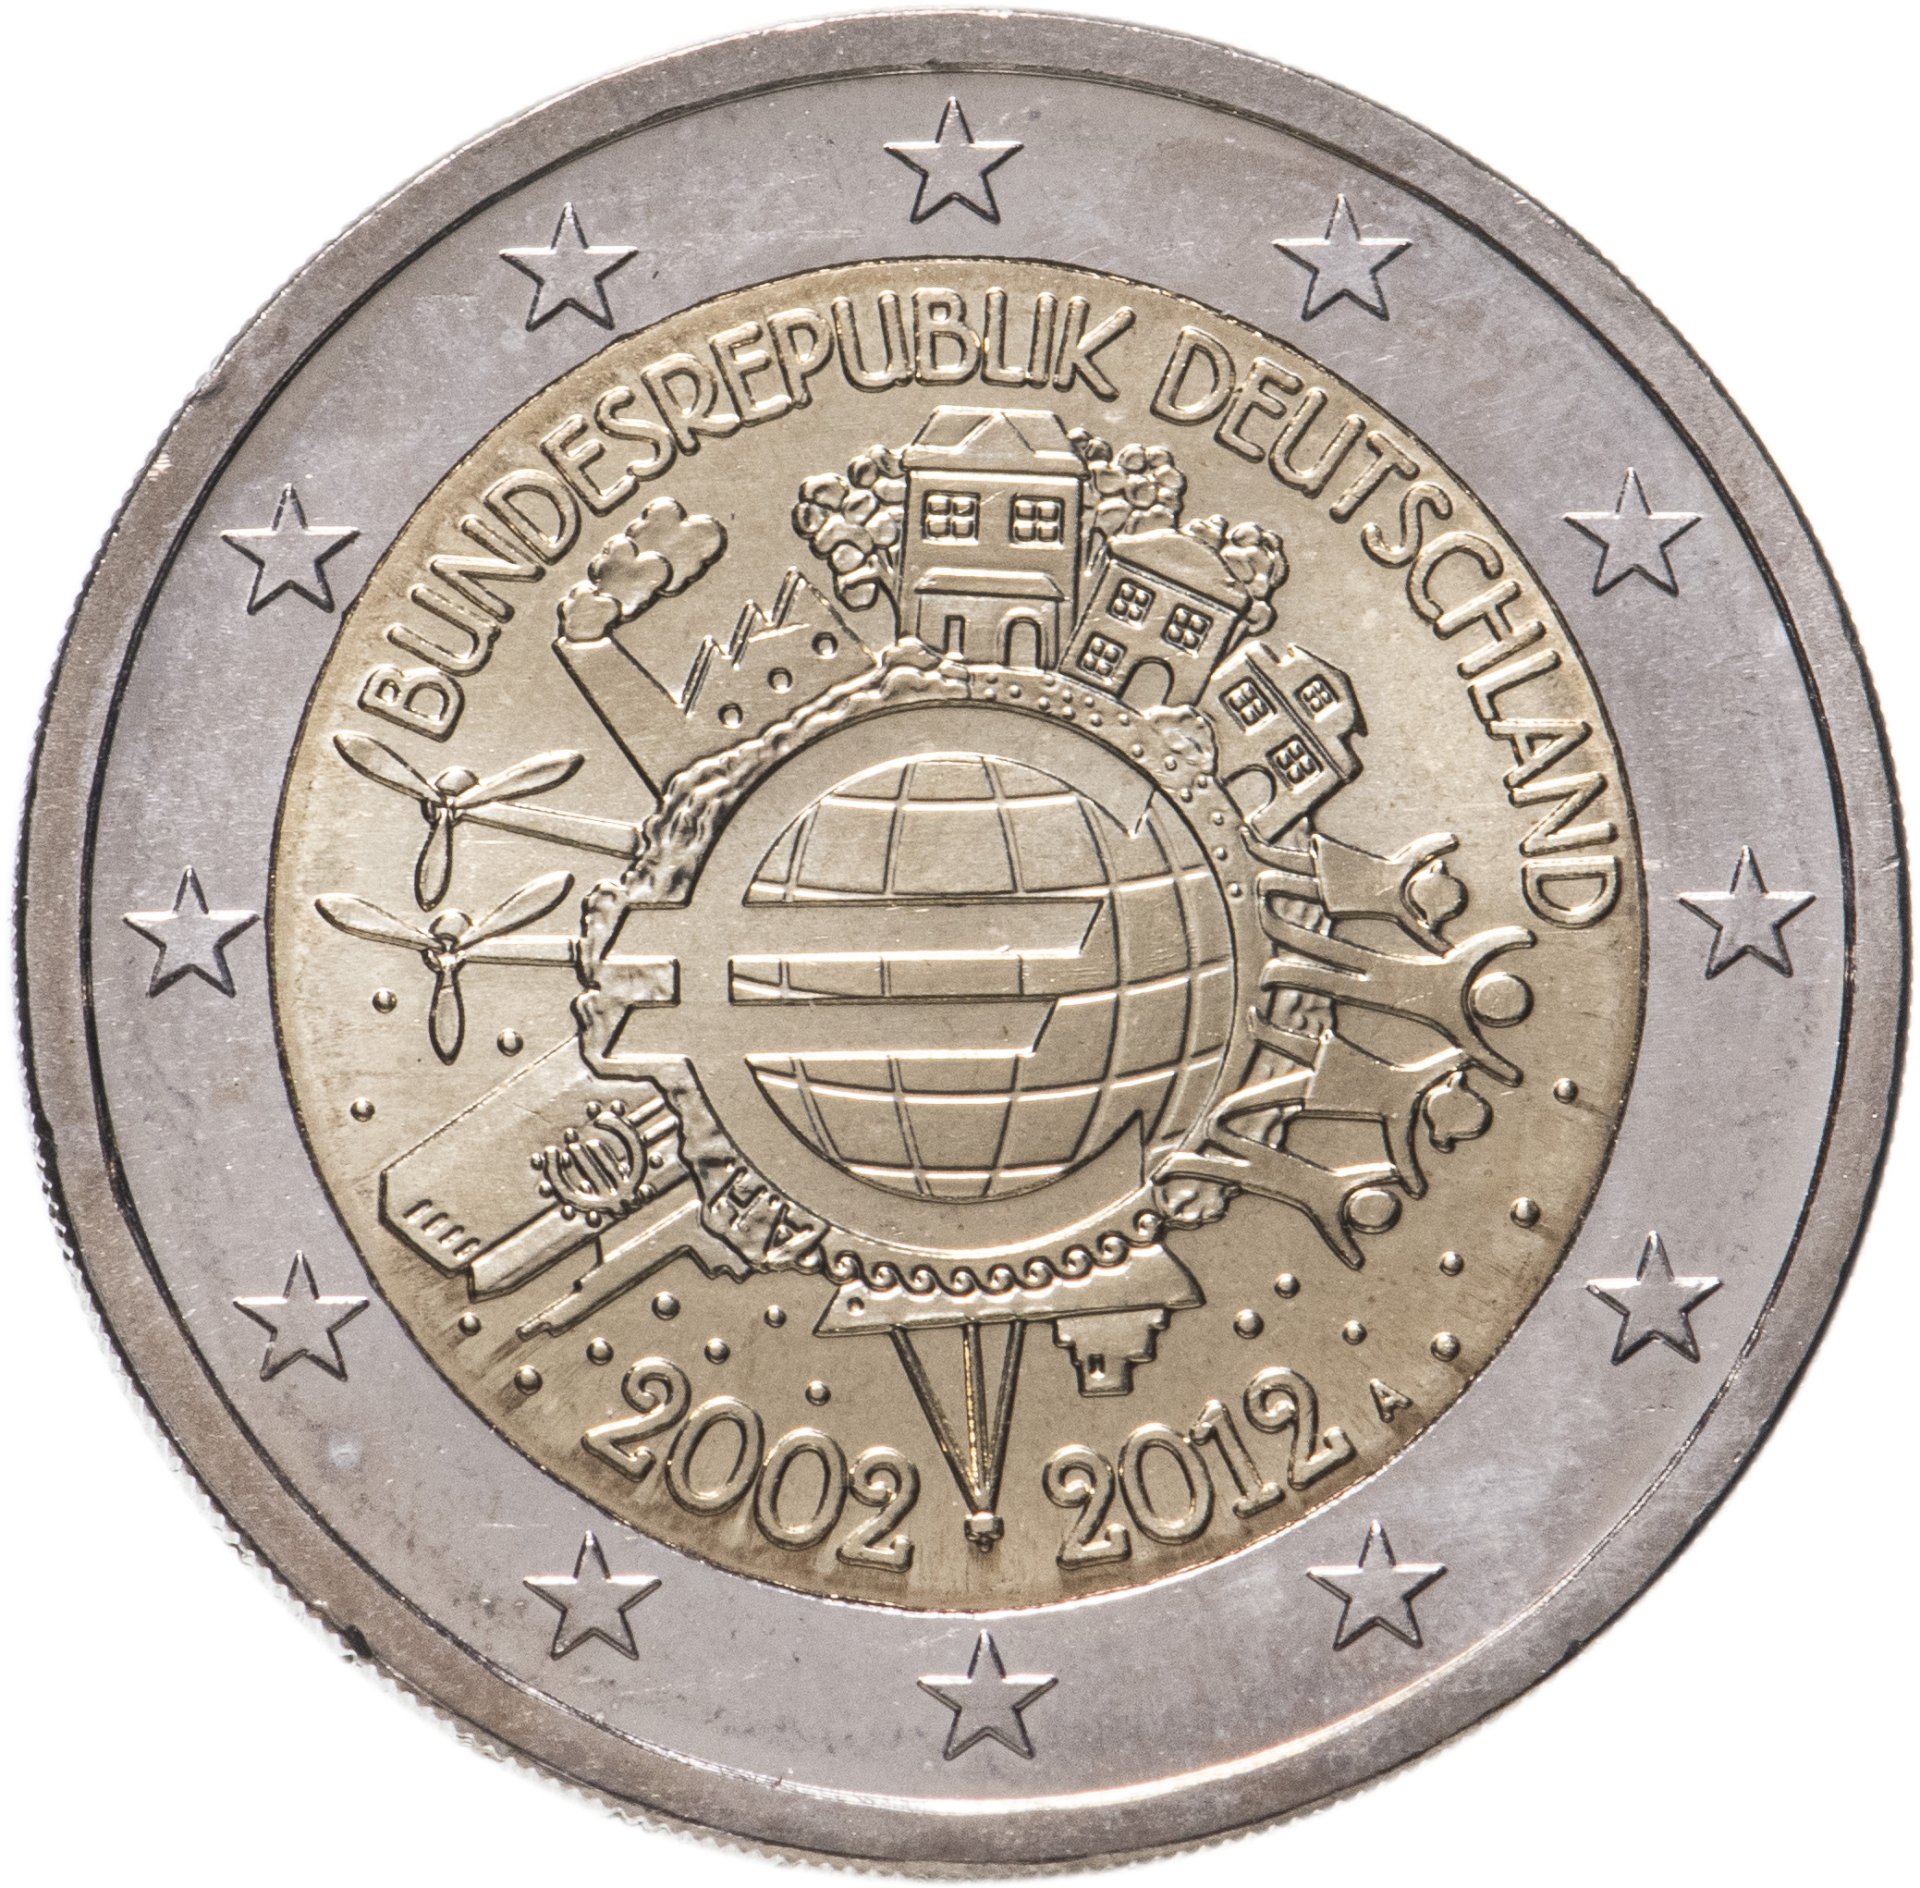 Памятные монеты евро. 2 Евро Нидерланды. 2 Евро Словакия 2012. 2 Евро 2012 10 лет наличному обращению евро. Юбилейные монеты 2 евро Франции.